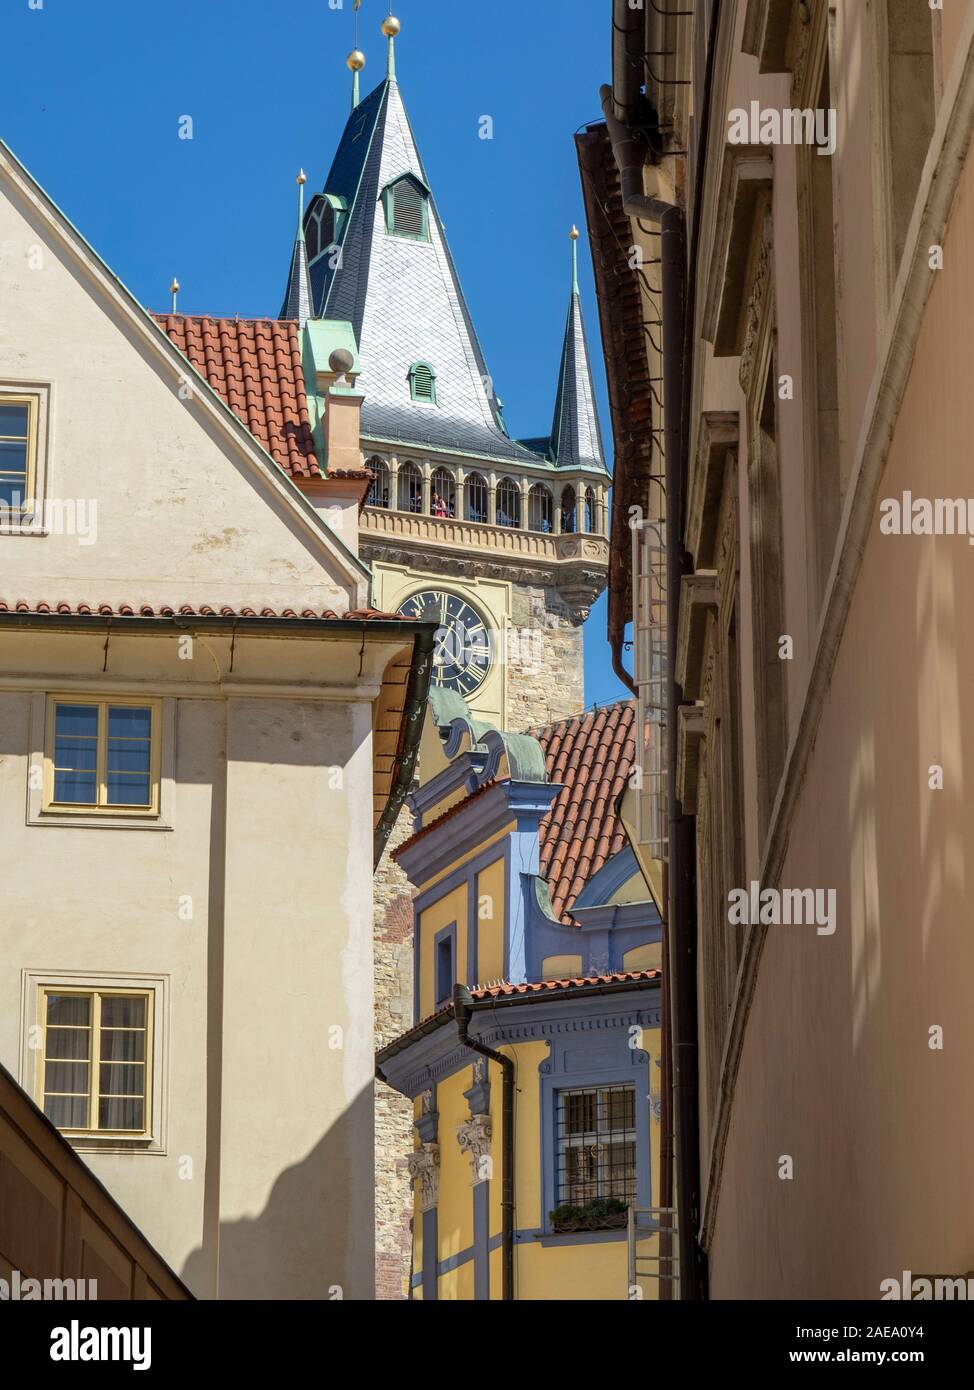 Façades colorées de bâtiments historiques traditionnels de la rue Melantrichova Vieille Ville Prague République tchèque. Banque D'Images